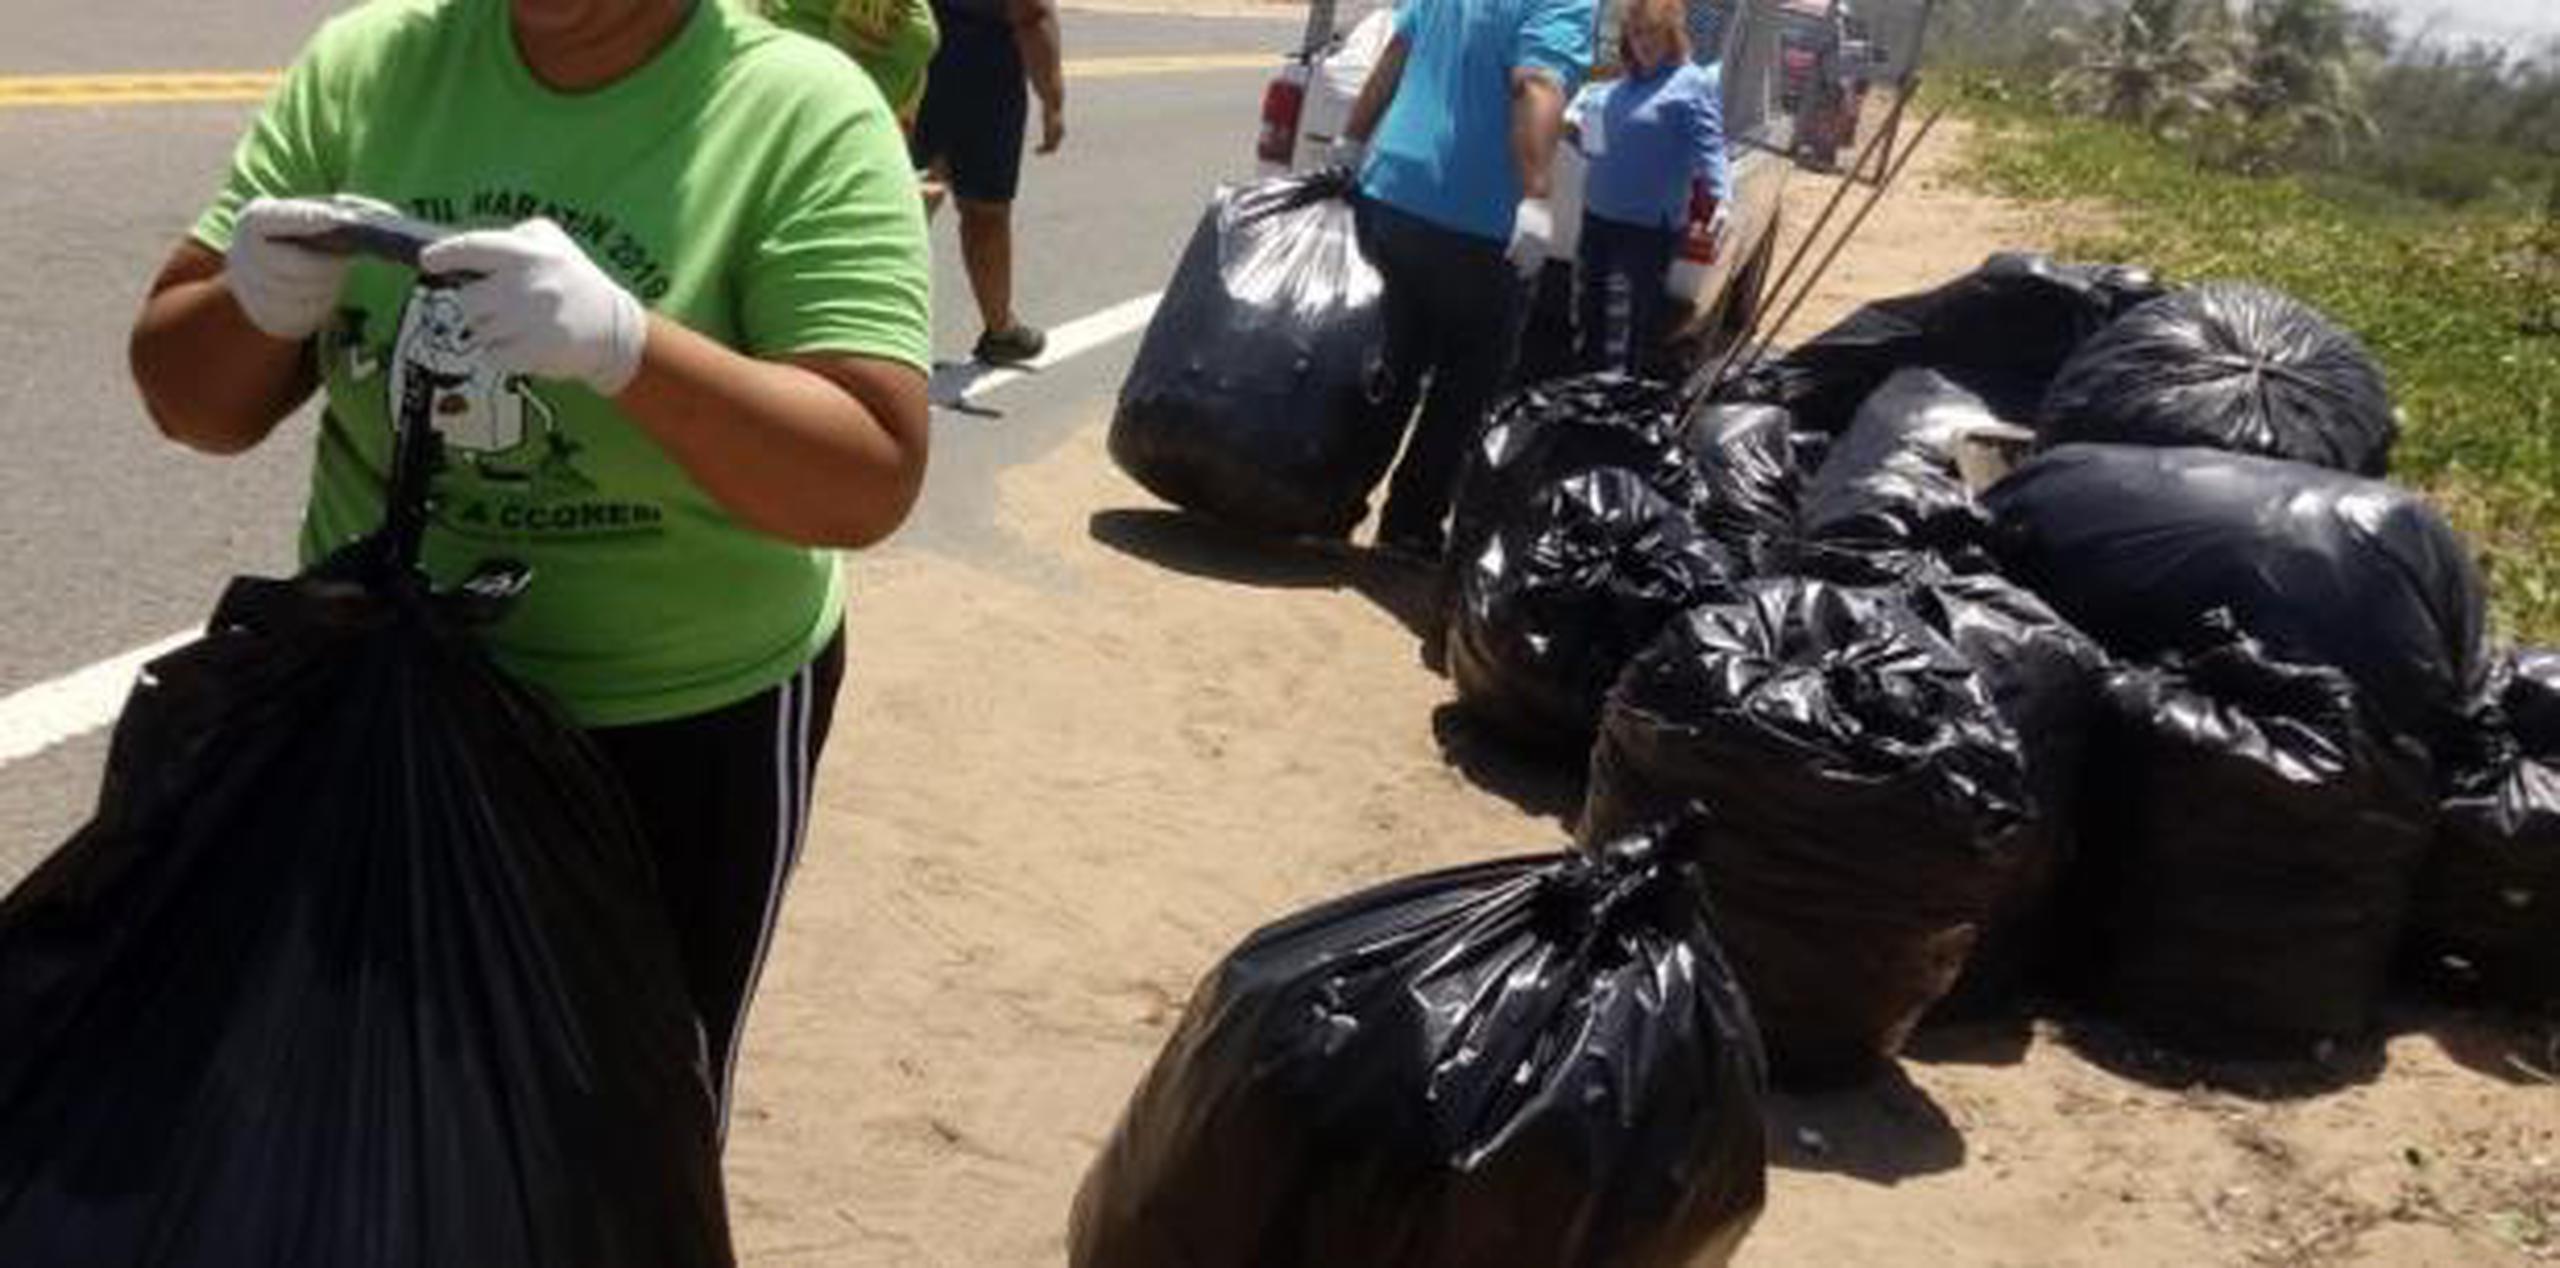 Personal de la Oficina de Reciclaje y Oficina de Cultura y Turismo del Municipio de Loíza realizaron en la mañana de ayer un operativo de limpieza en la zona. (suministrada)